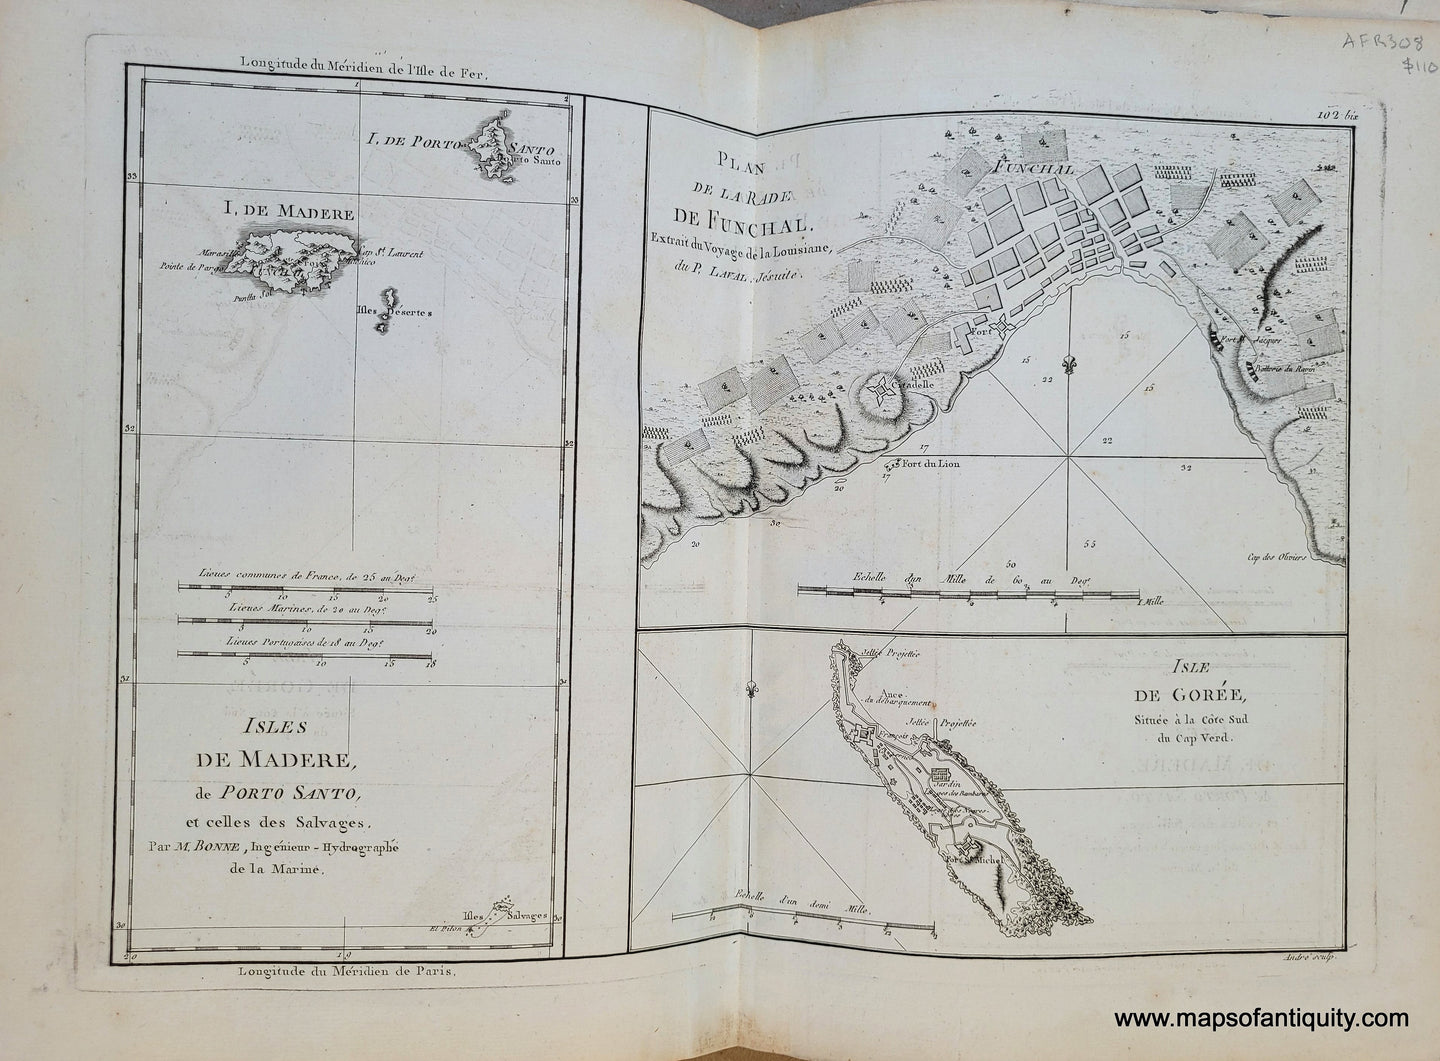 Genuine-Antique-Map-Islands-of-Maderia-and-Goree---Isles-de-Madere-de-Porto-Santo-et-celles-des-Salvages-Plan-de-la-Rade-de-Funchal-Isle-de-Goree-1788-Bonne-Desmarest-Maps-Of-Antiquity